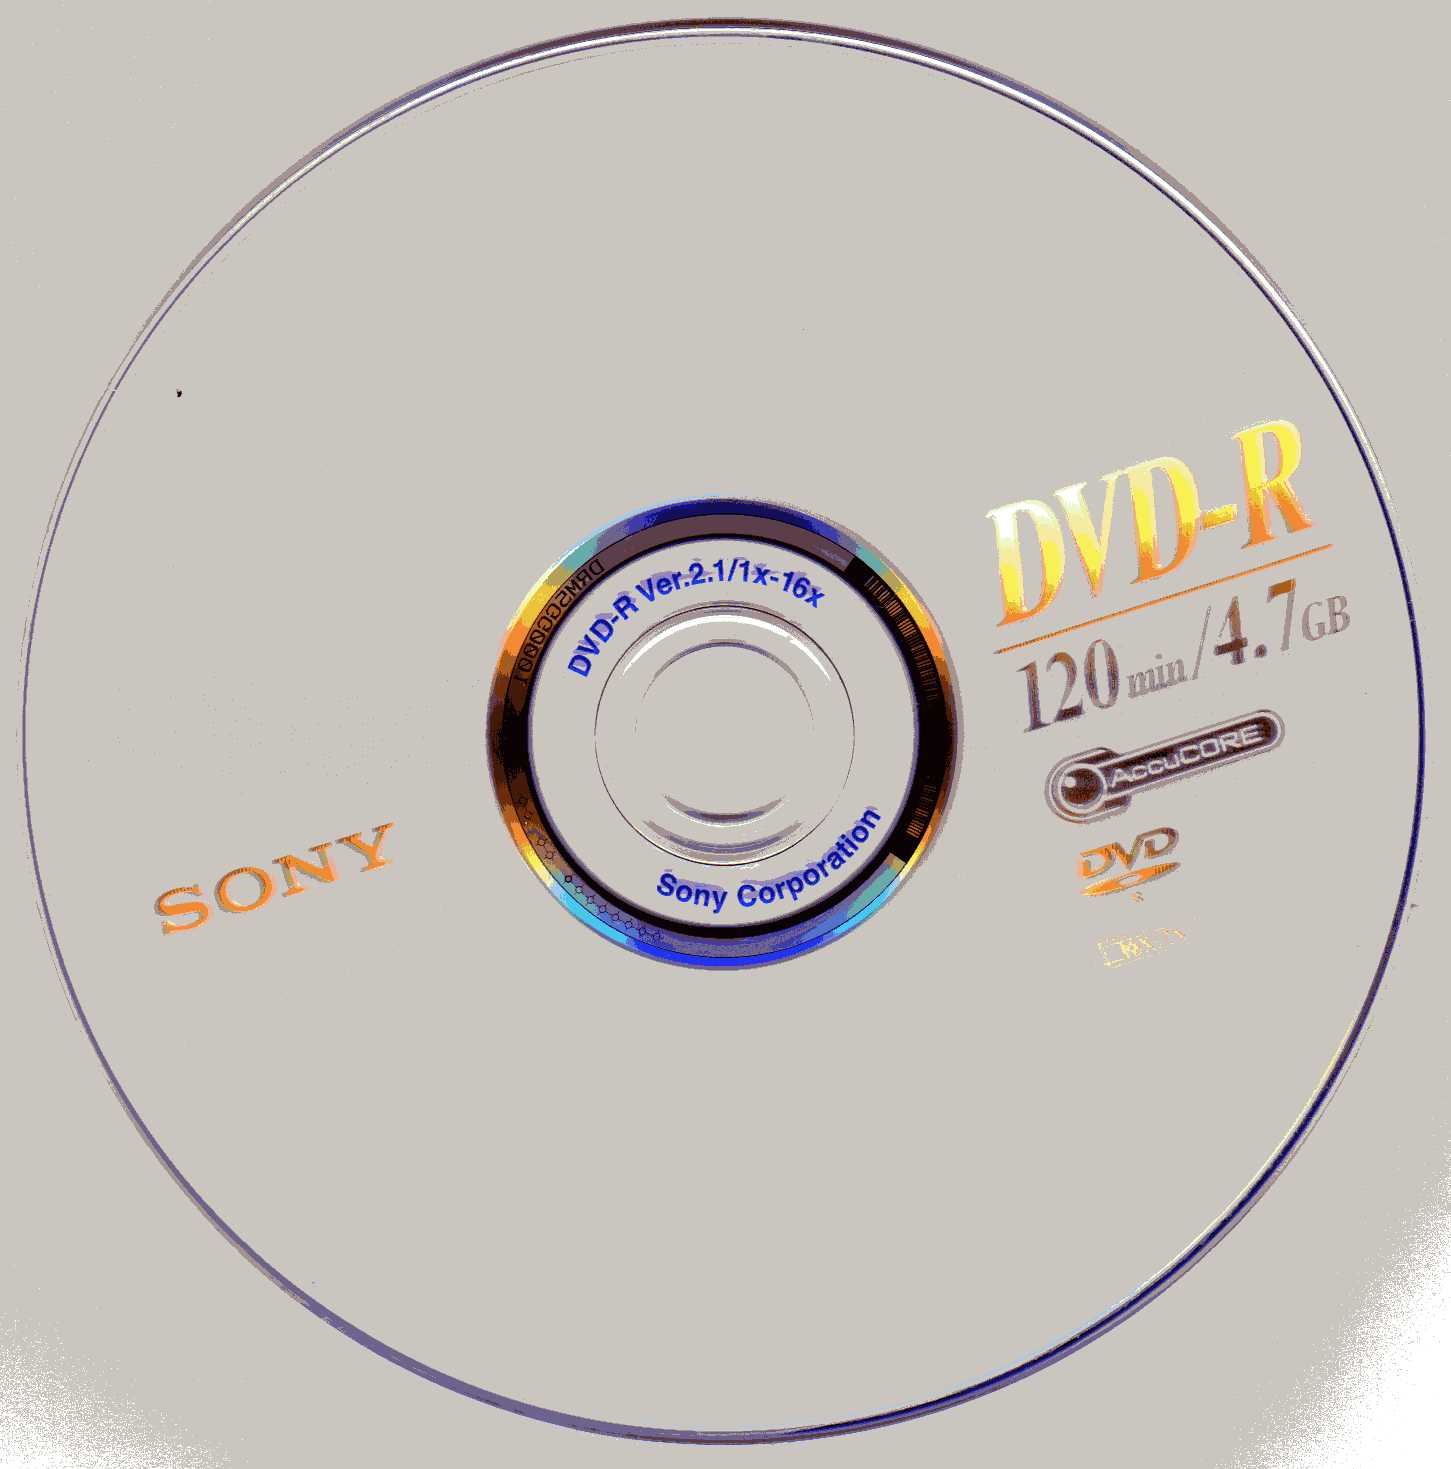 Four (4) Sony DVD+R RW 120min 4.7 GB